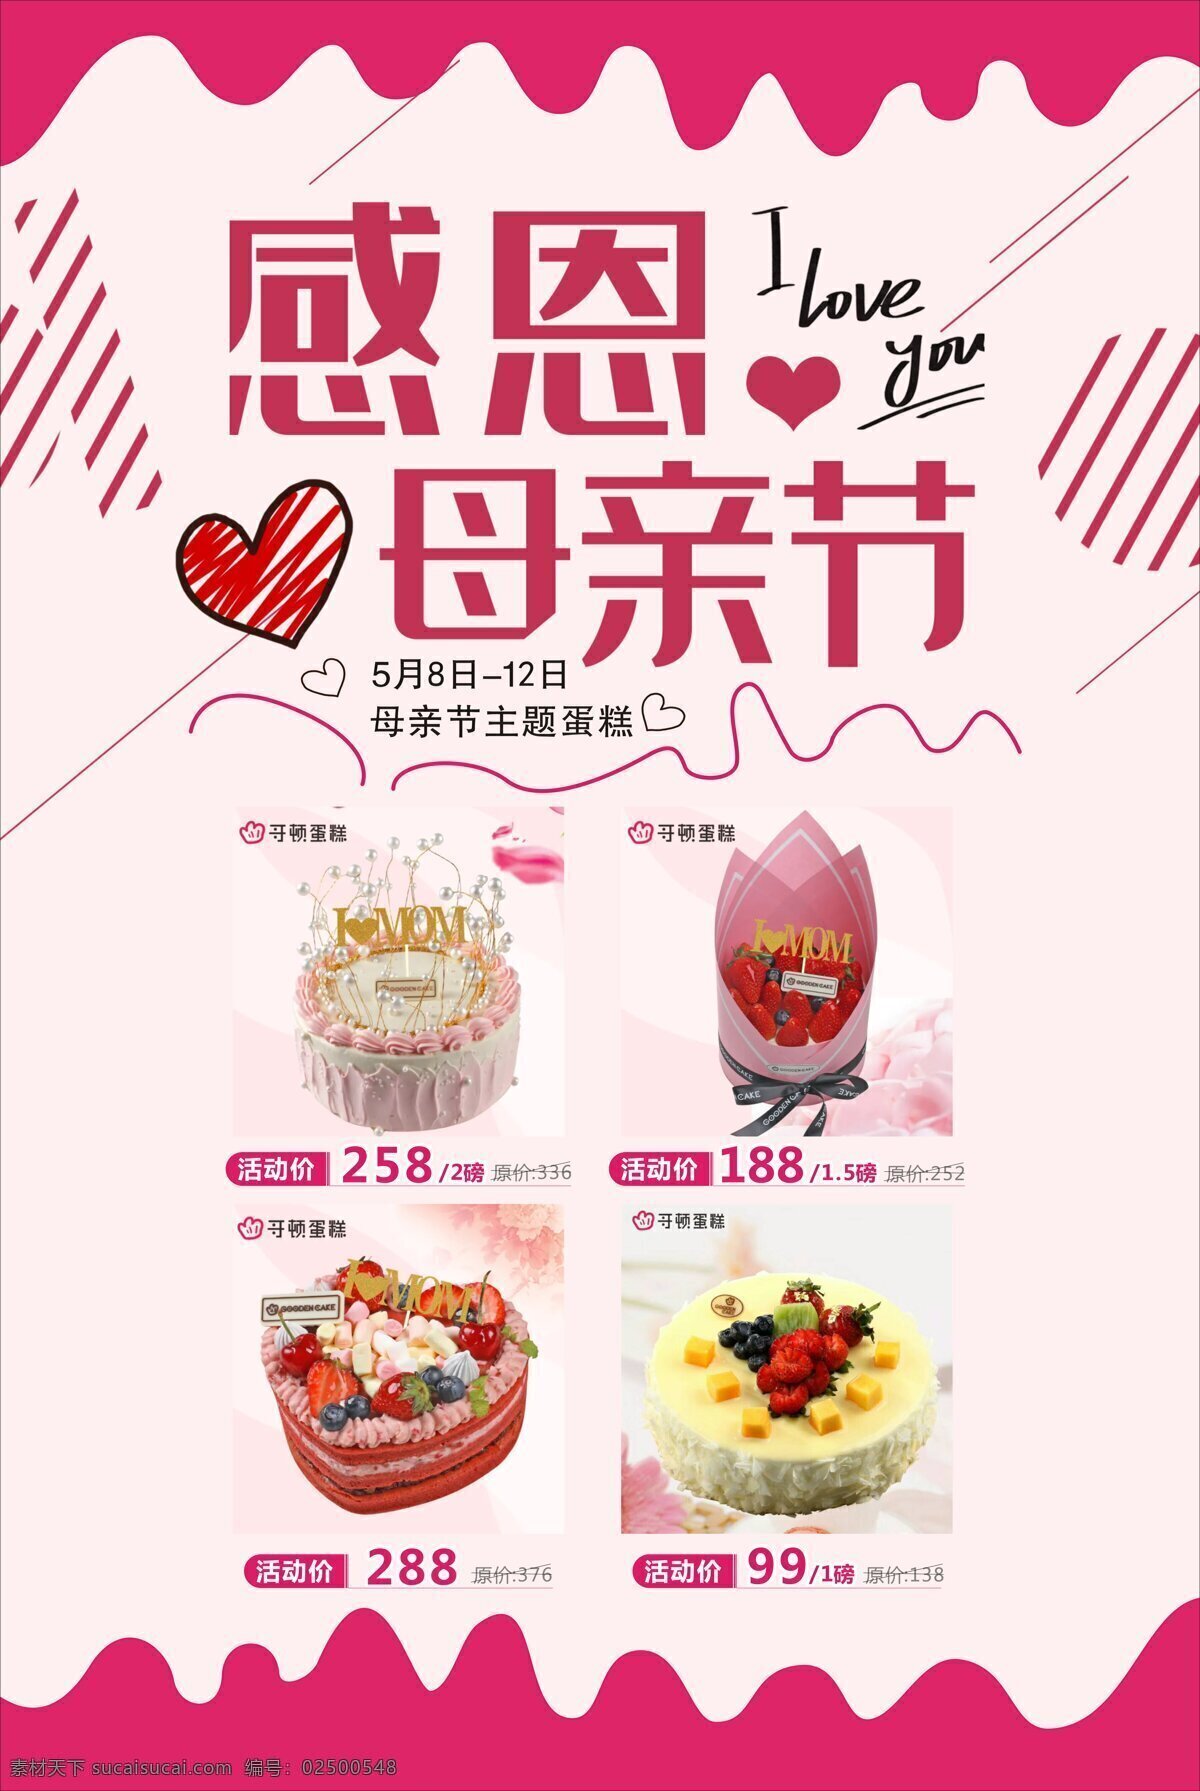 蛋糕店宣传单 蛋糕店 宣传单 粉色背景 母亲节 爱心海报 文化艺术